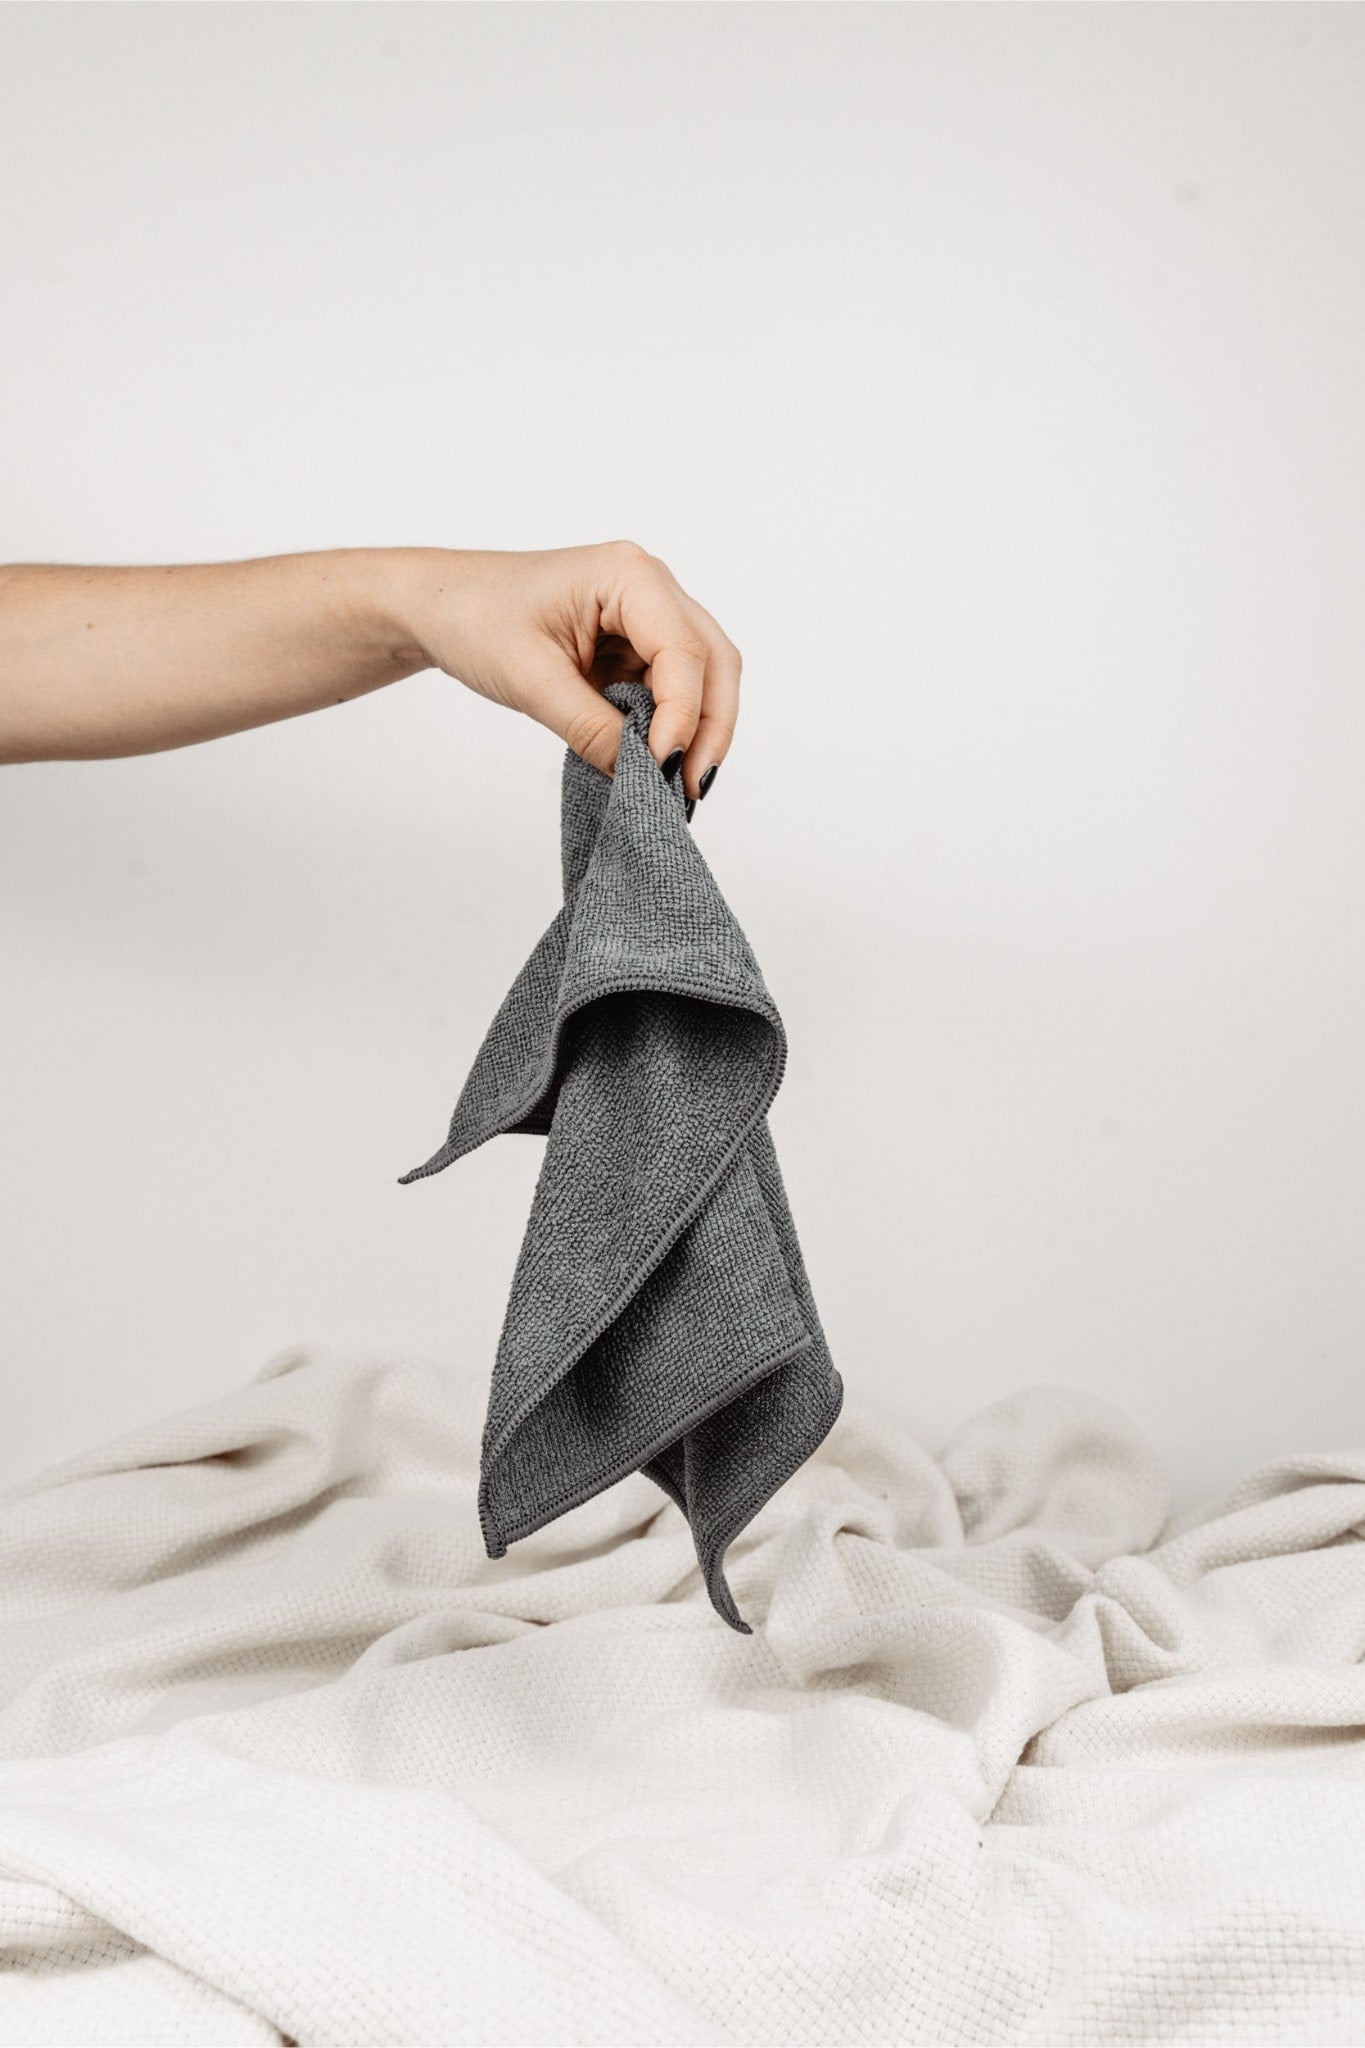 Magic Towel: Von einer Hand gehalten, präsentiert auf neutralem Hintergrund mit einer weißen Decke. Ein vielseitiges und sanftes Reinigungstuch, hervorragend für empfindliche Oberflächen und eine effektive Schmutz- und Feuchtigkeitsaufnahme.